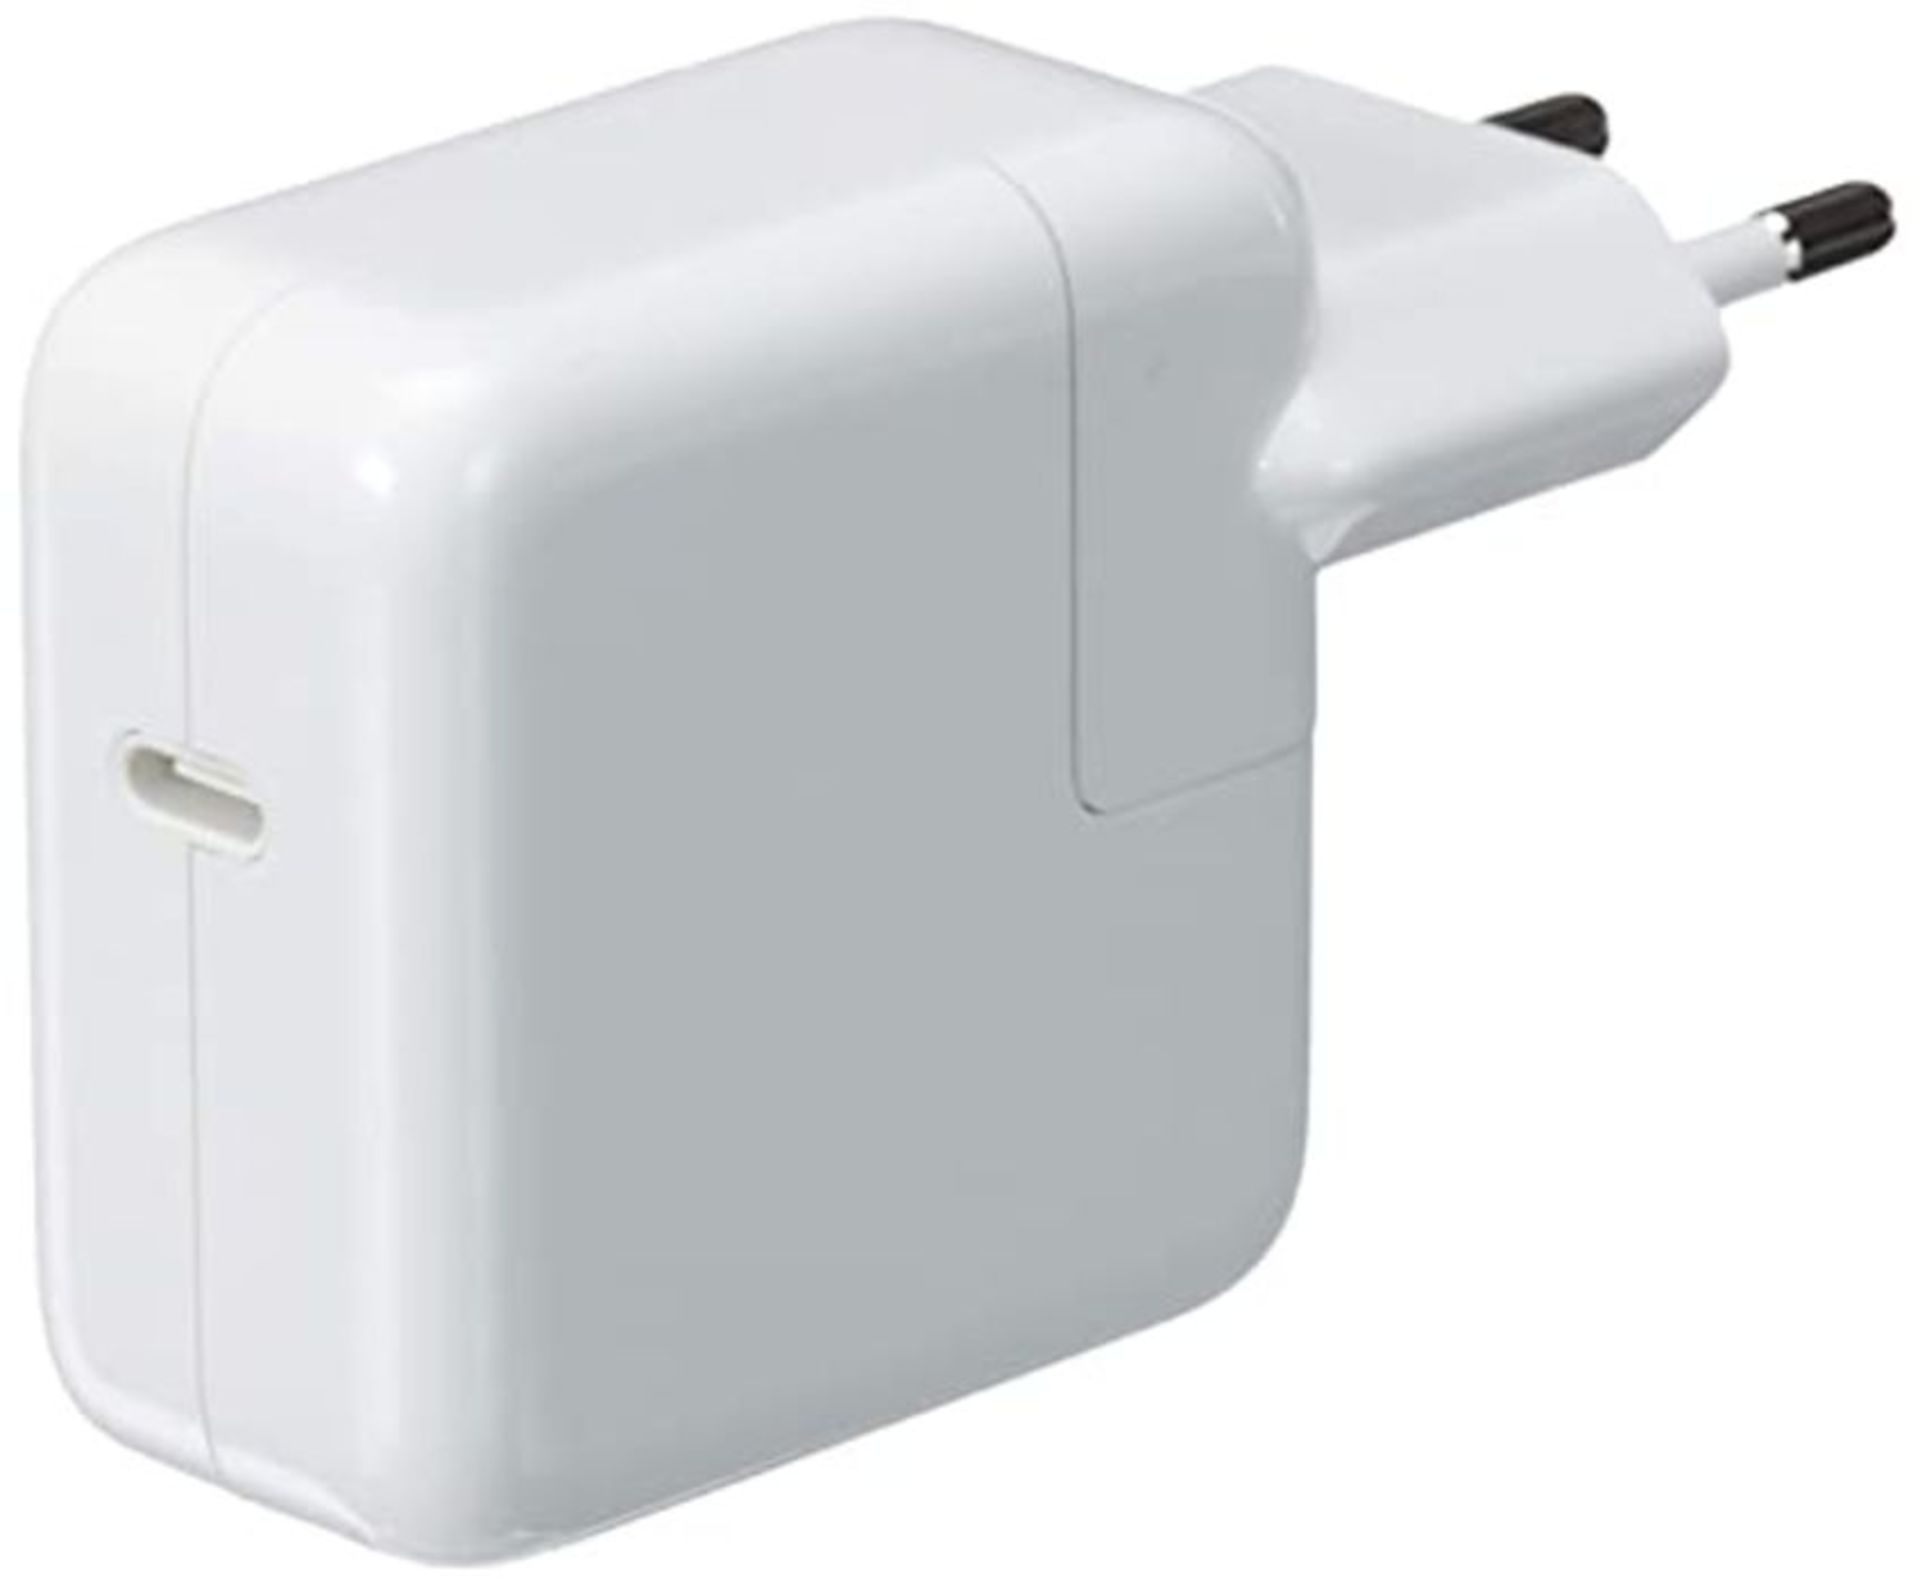 Apple 30W USB C Power Adapter